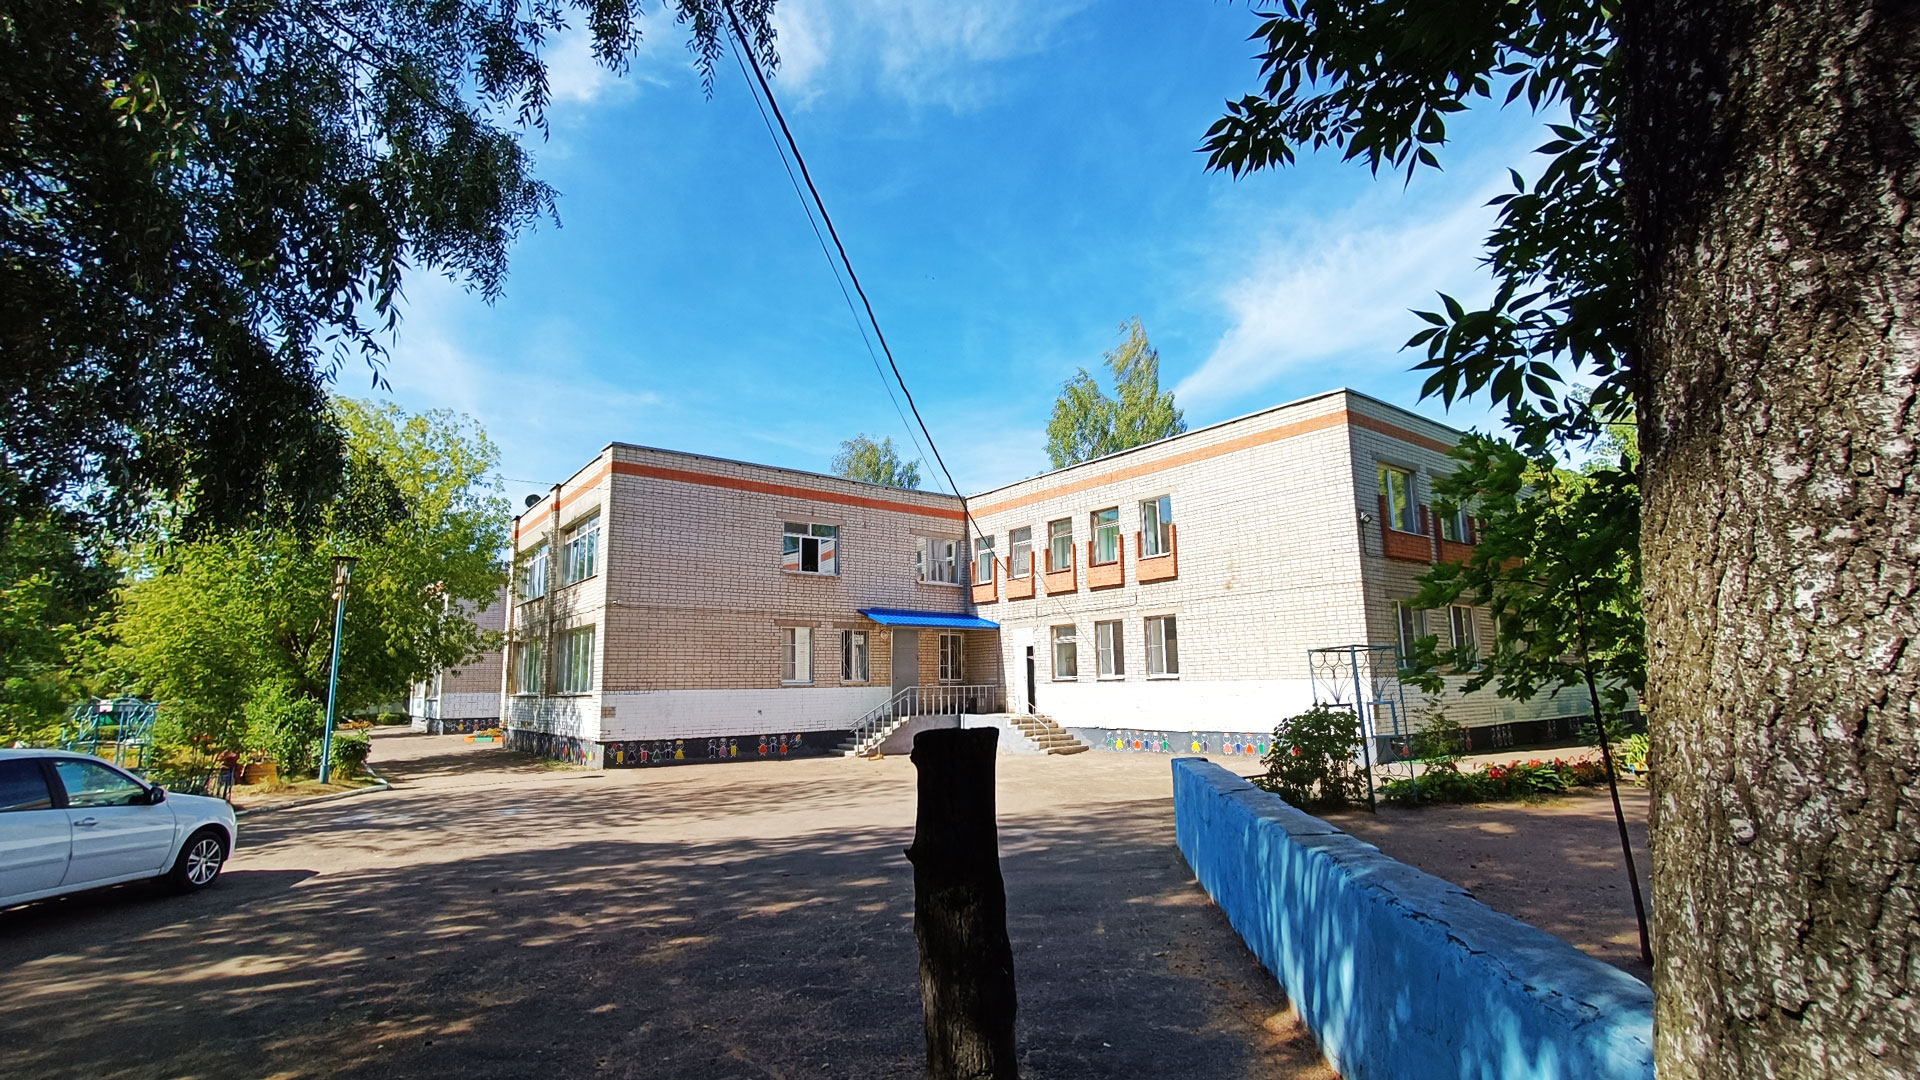 Детский сад 144 Ярославль: общий вид здания.